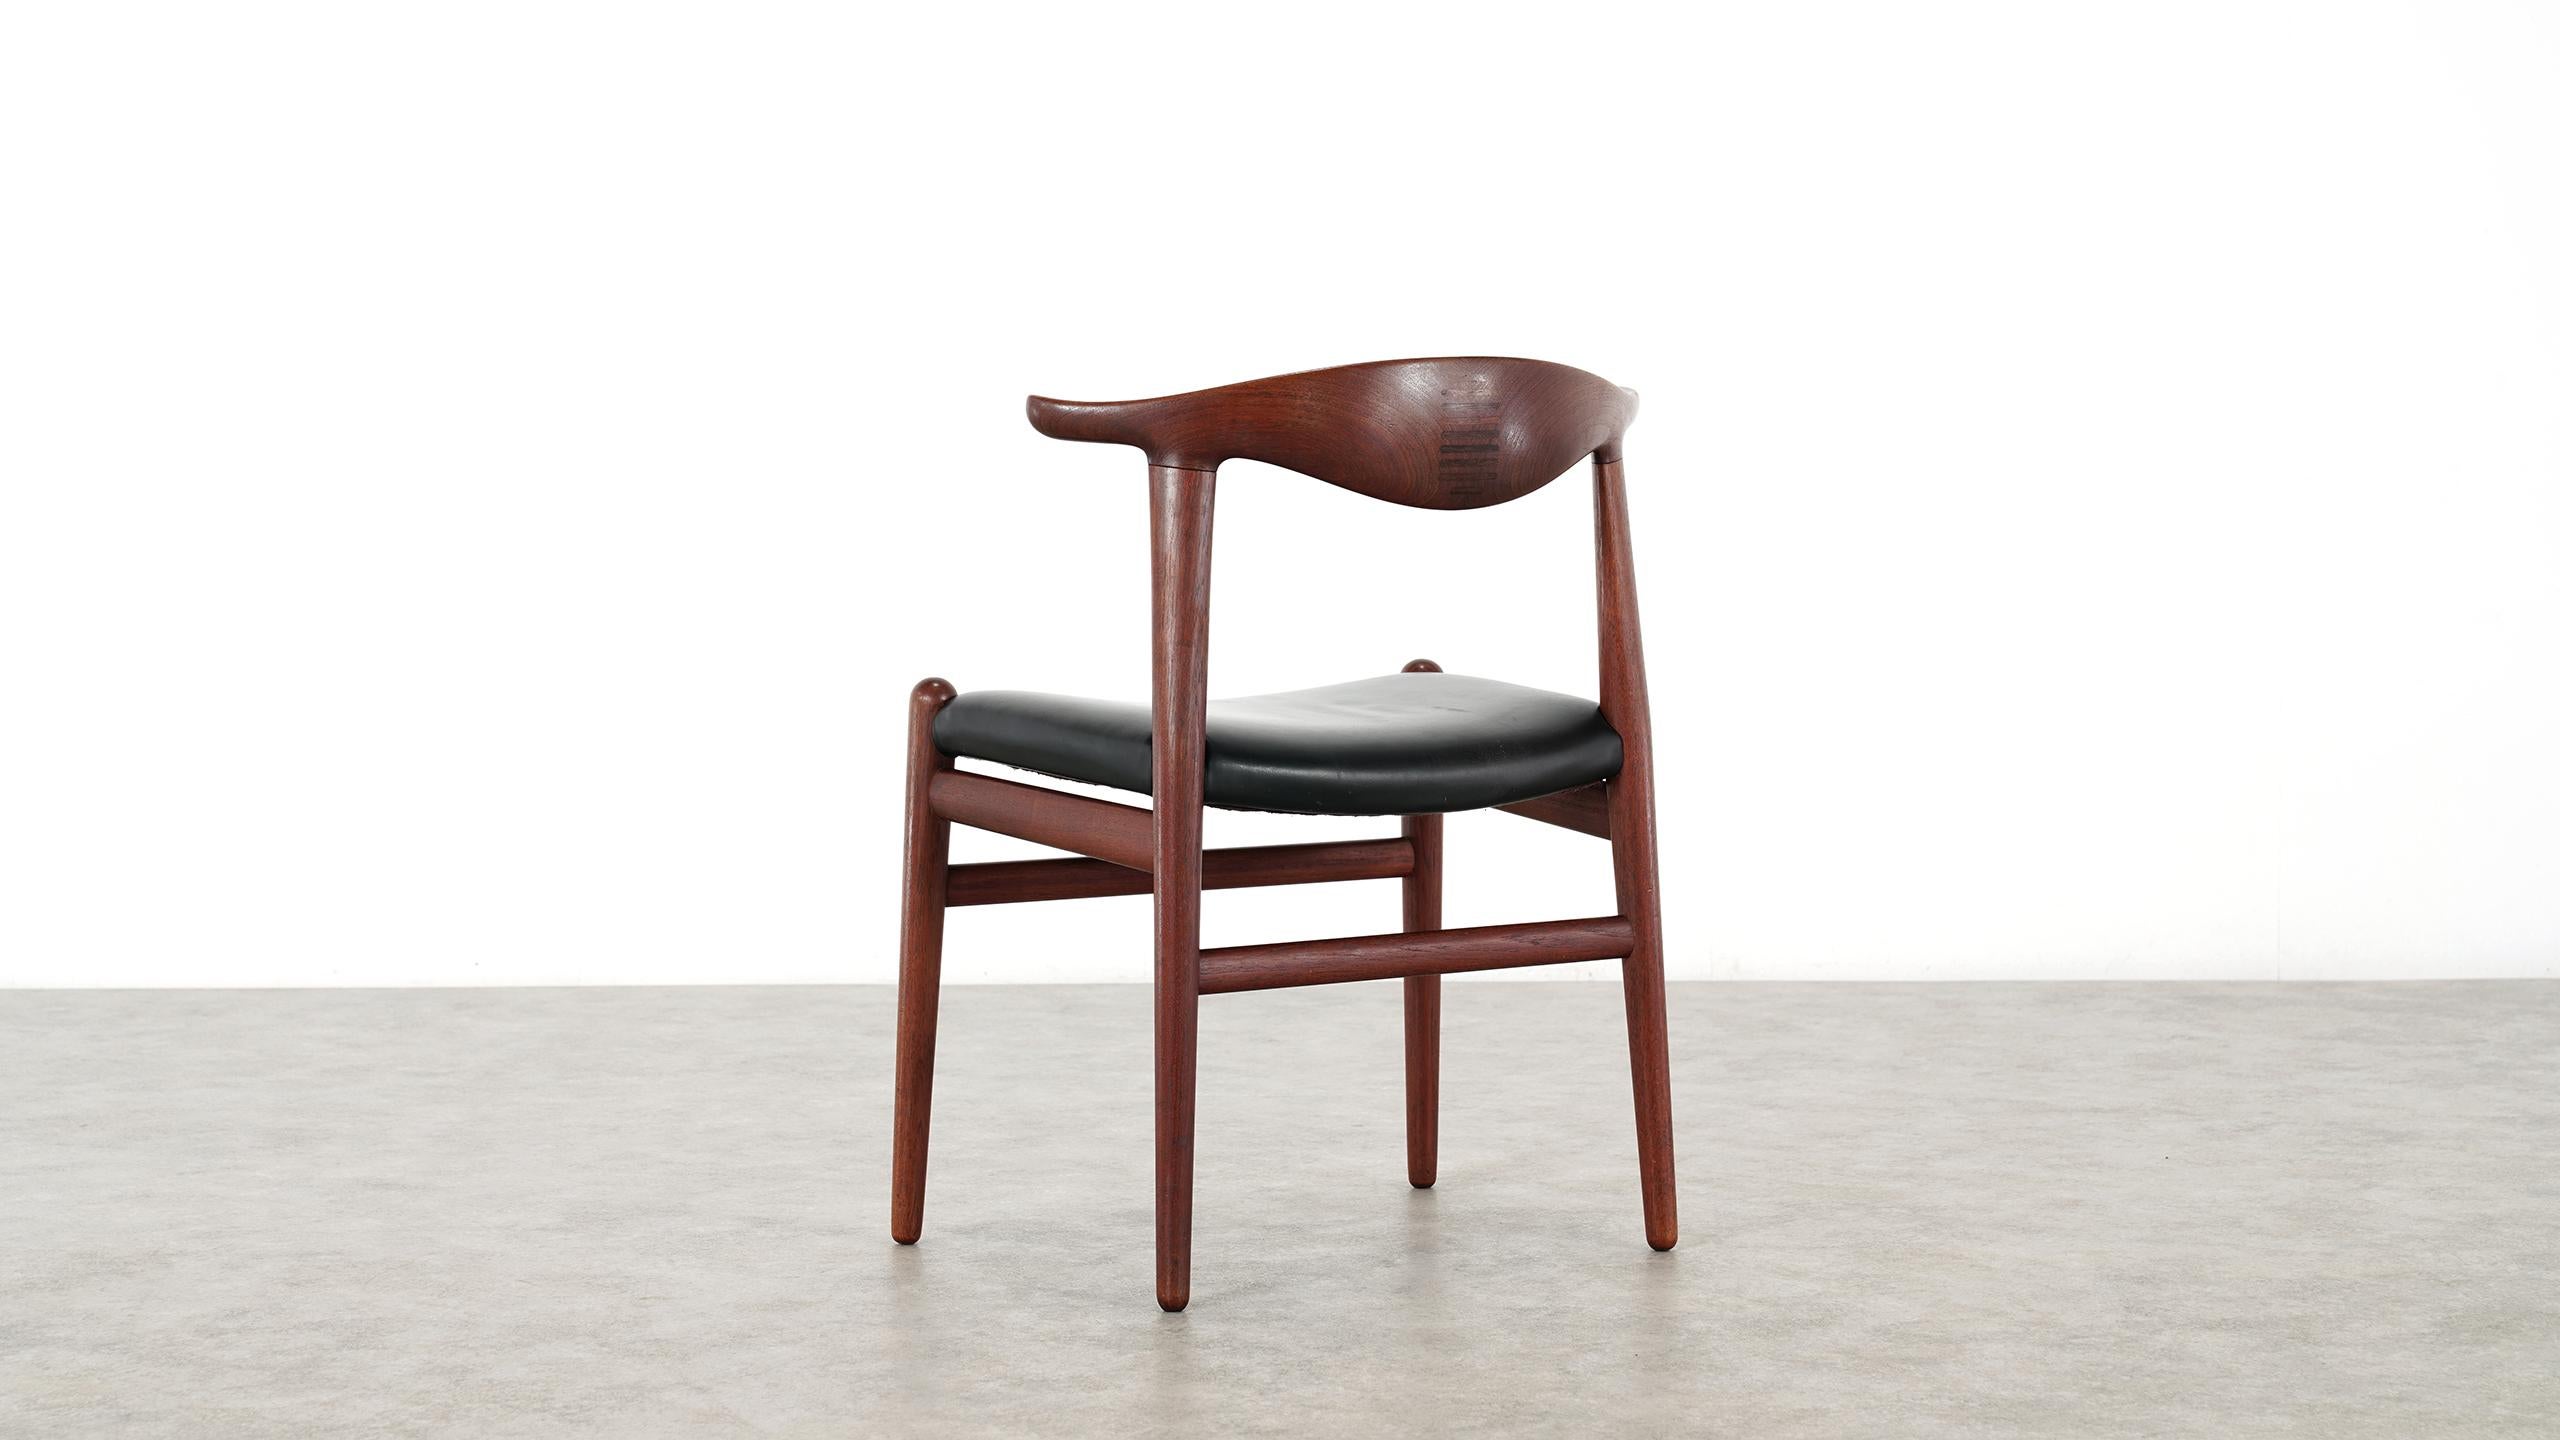 Leather Hans J. Wegner Rare Cowhorn Chair in Teak, 1952 for Johannes Hansen, Denmark